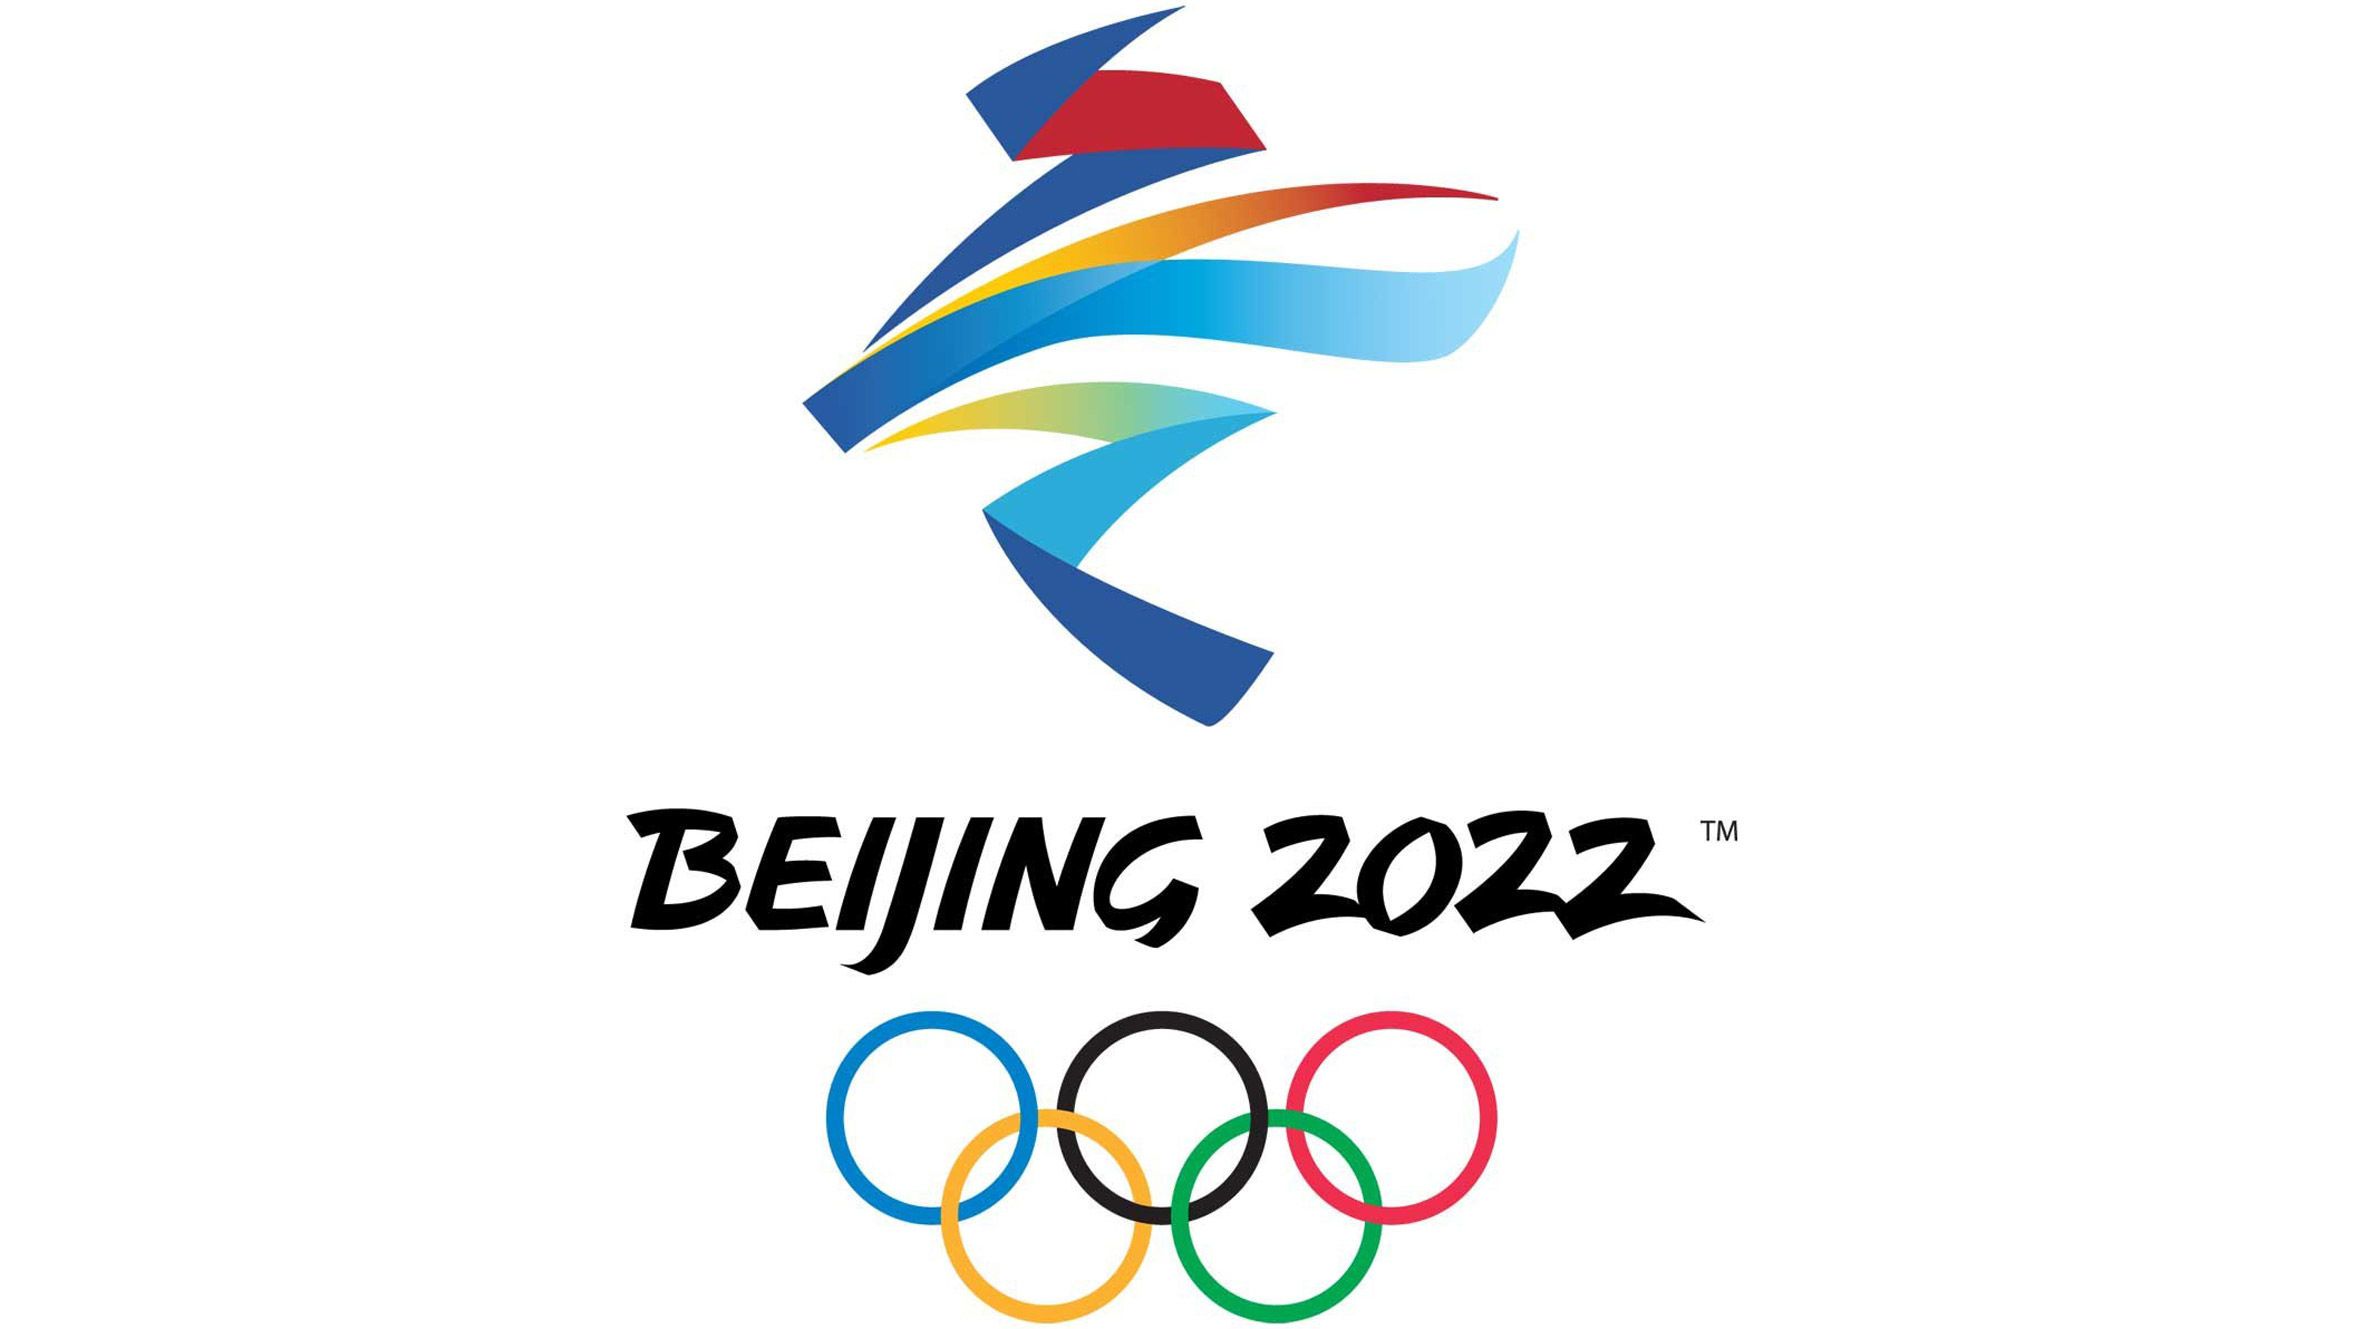 Сборная России займет 2-е место в медальном зачете ОИ-2022 в Пекине согласно прогнозу американских аналитиков